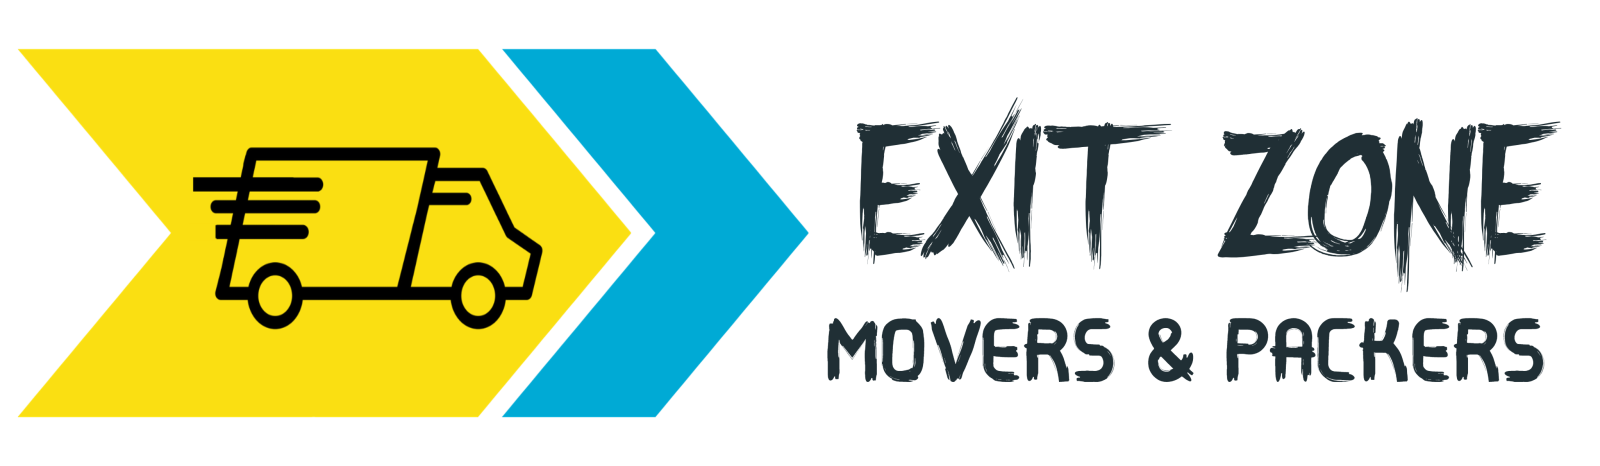 Exit Zones Movers